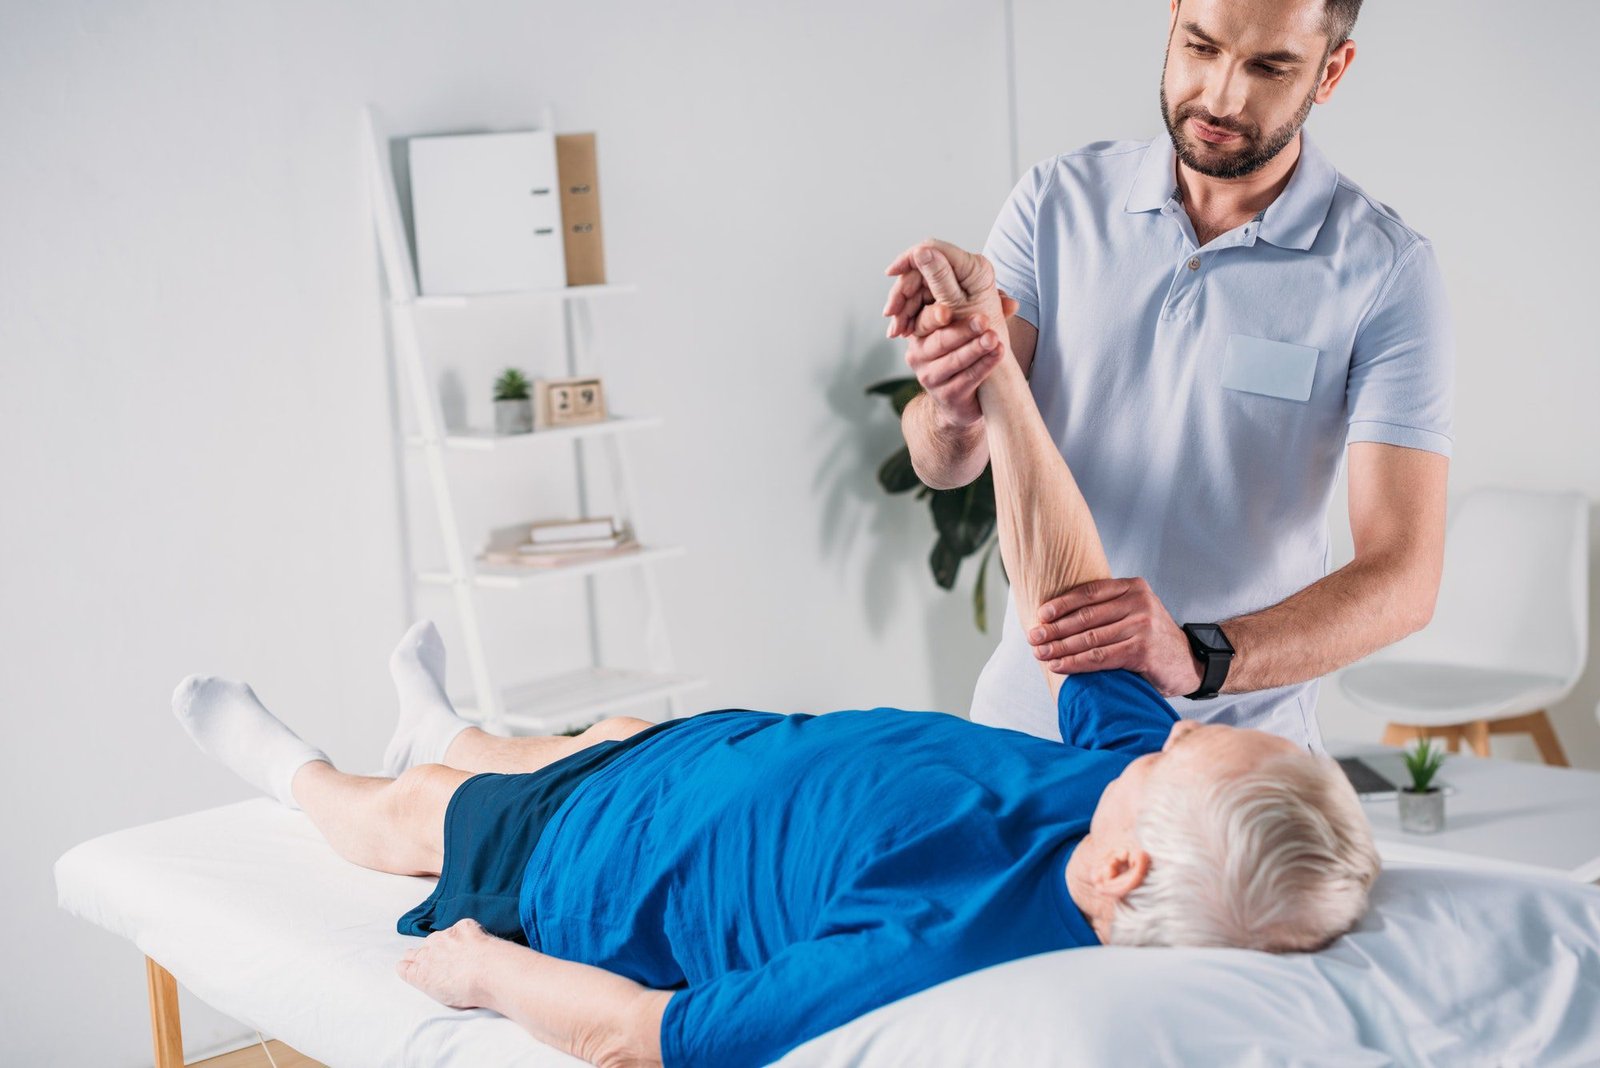 focused physiotherapist doing massage to senior man on massage table